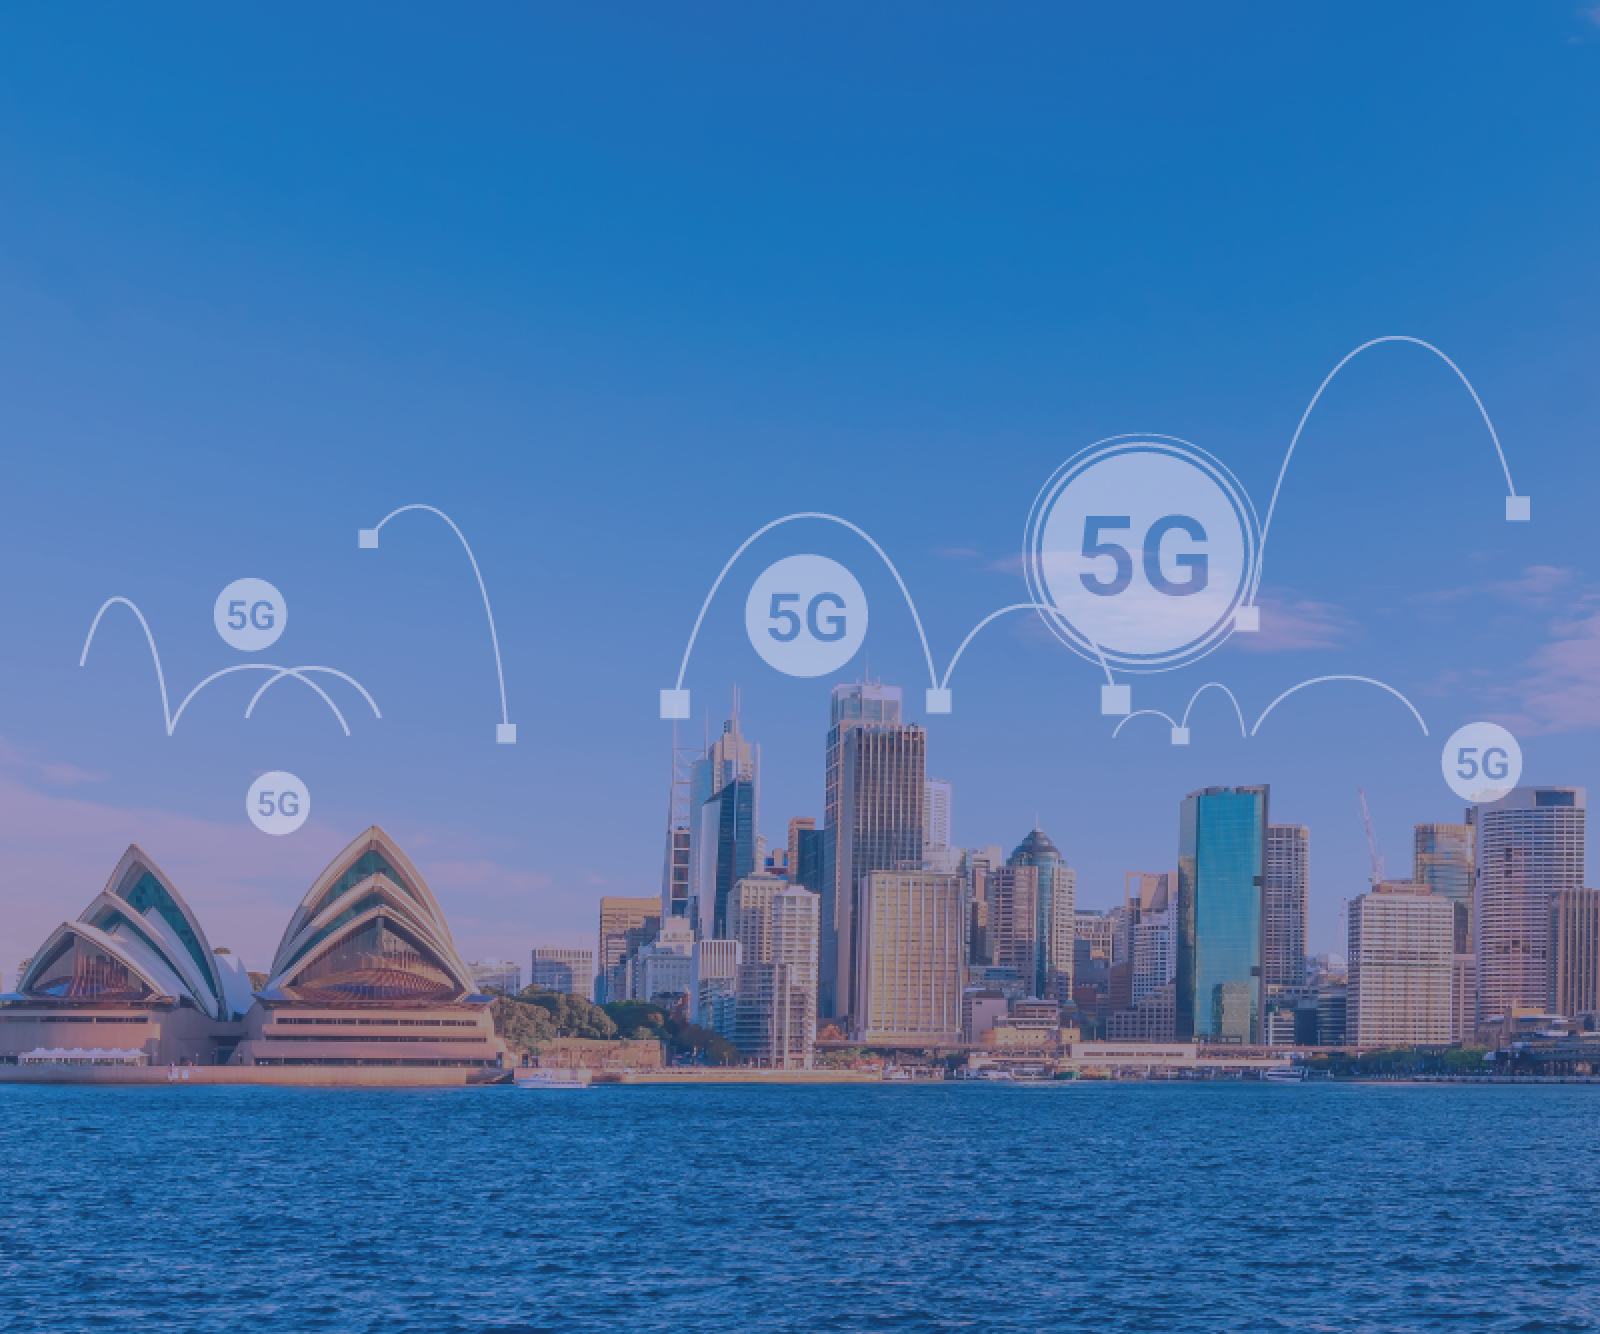 5G technology infrastructure in urban Australia.